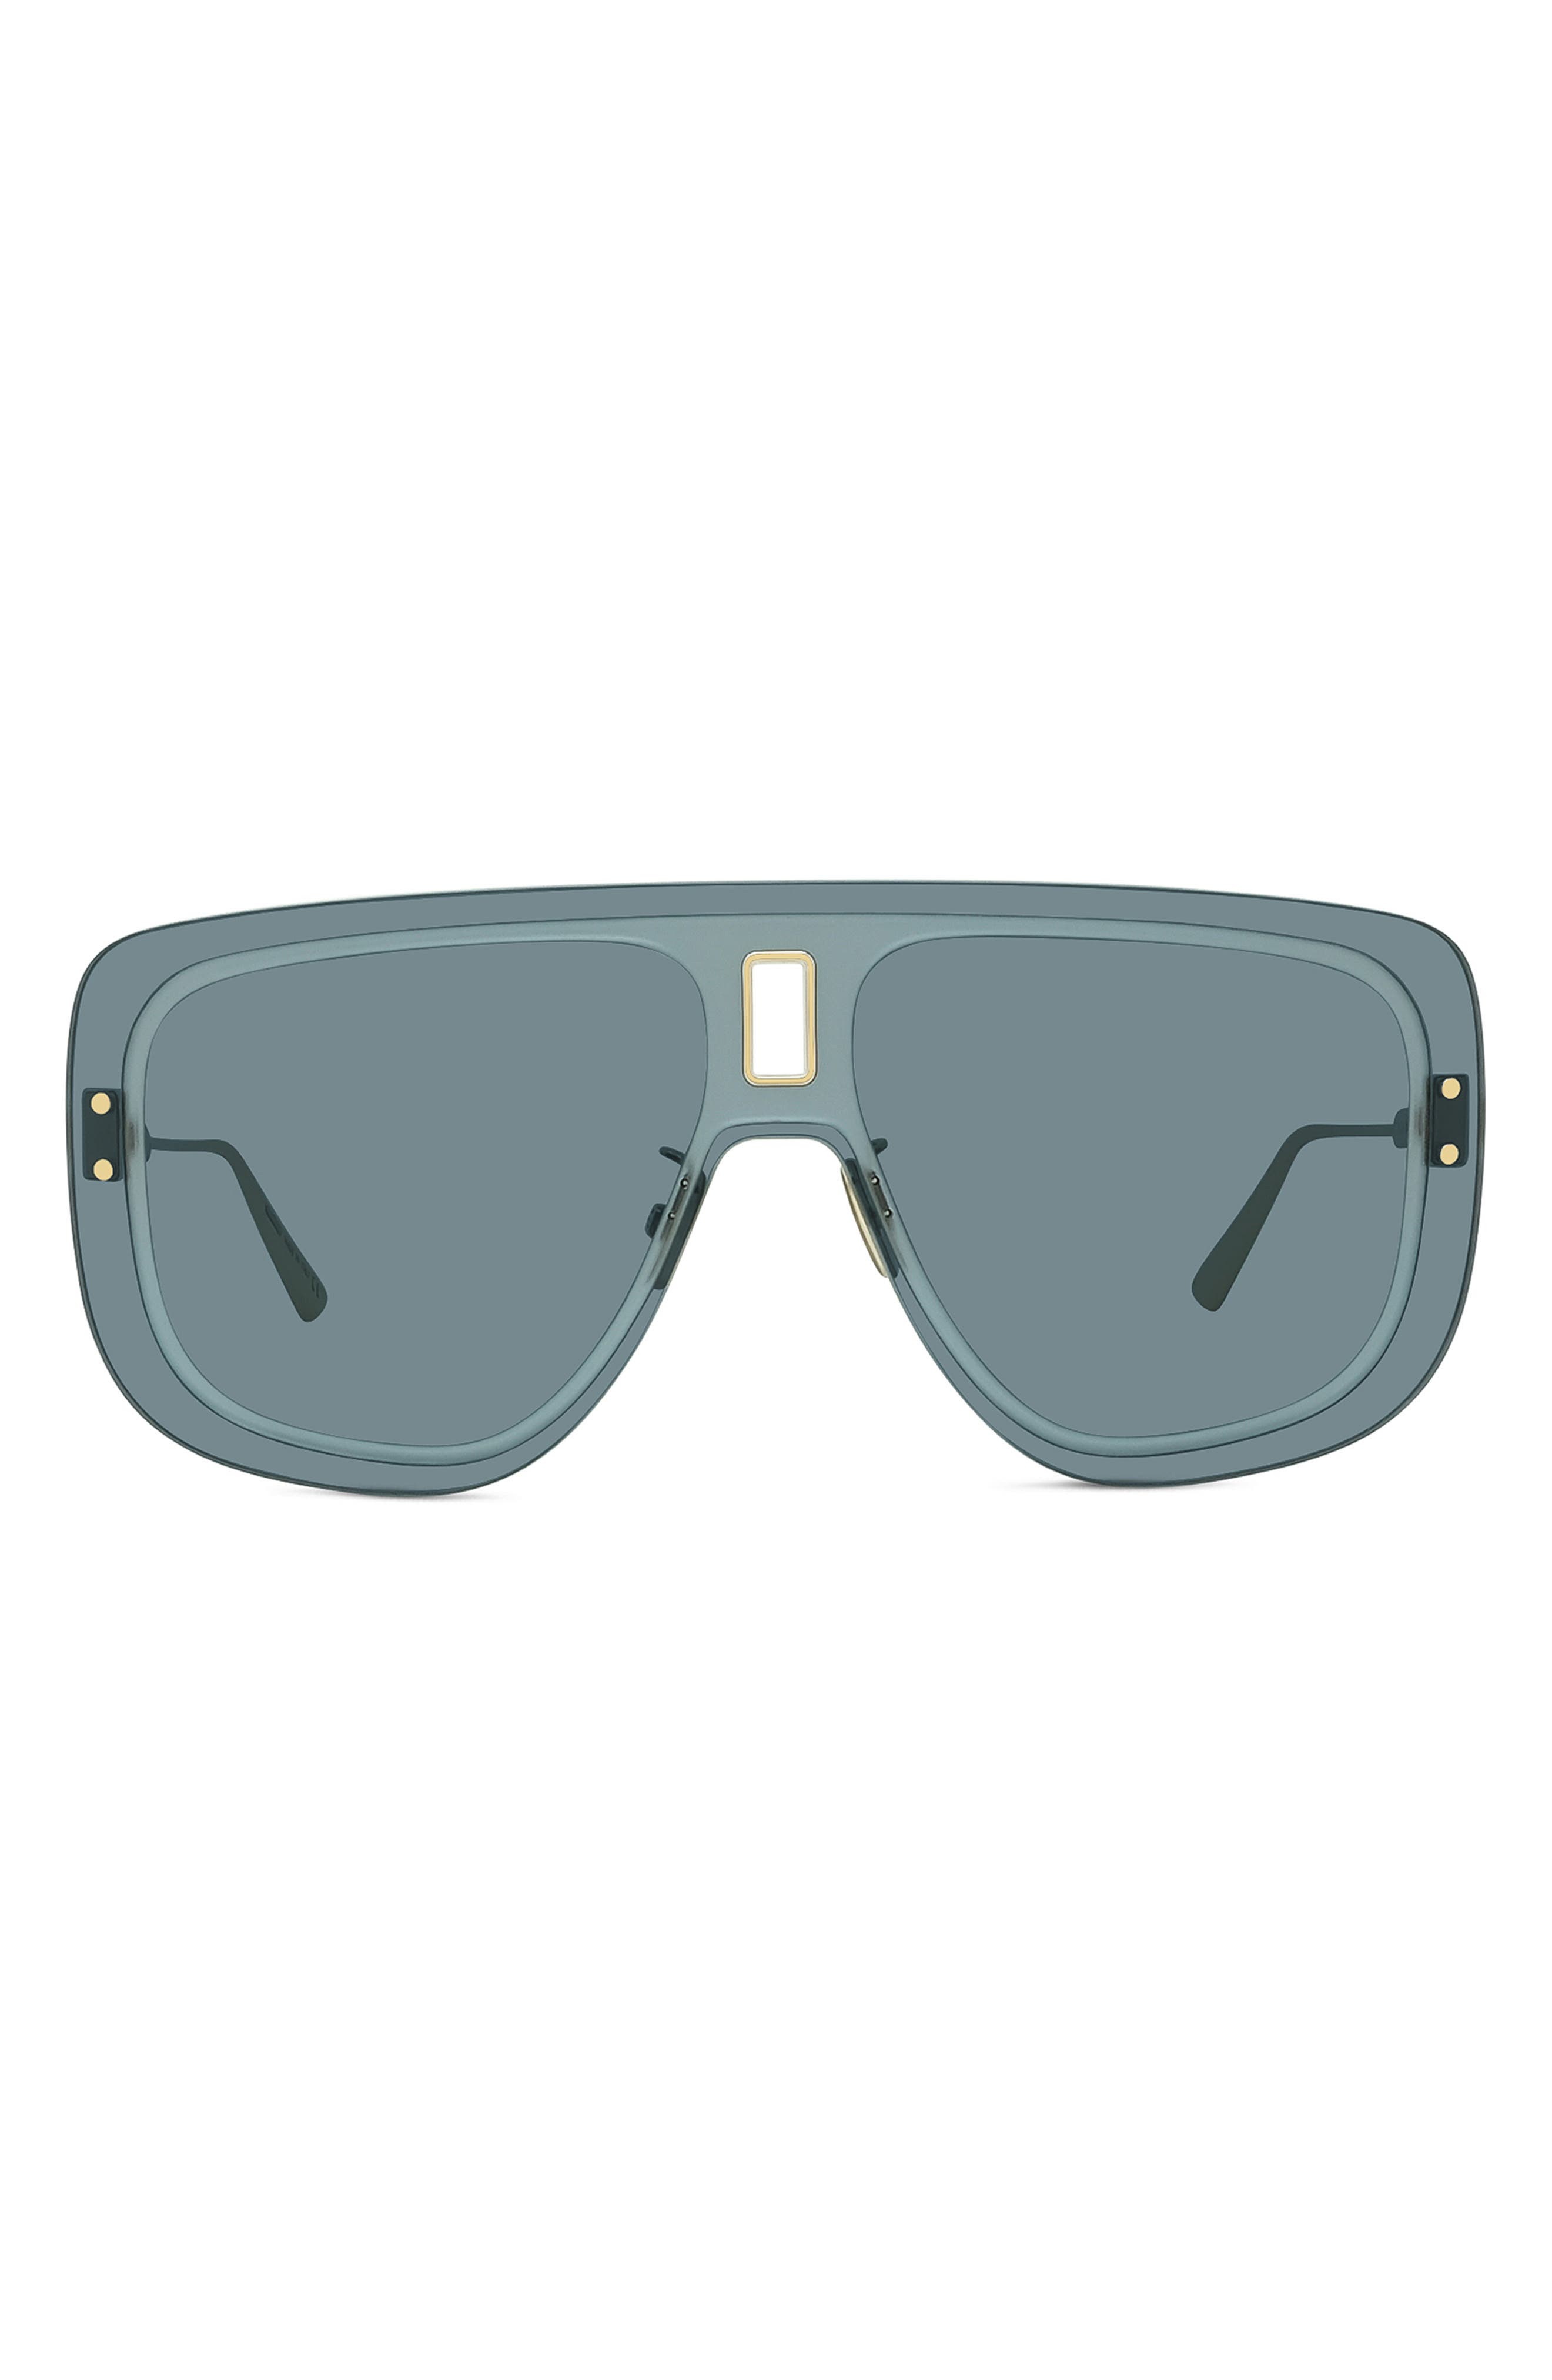 dior sunglasses for ladies price